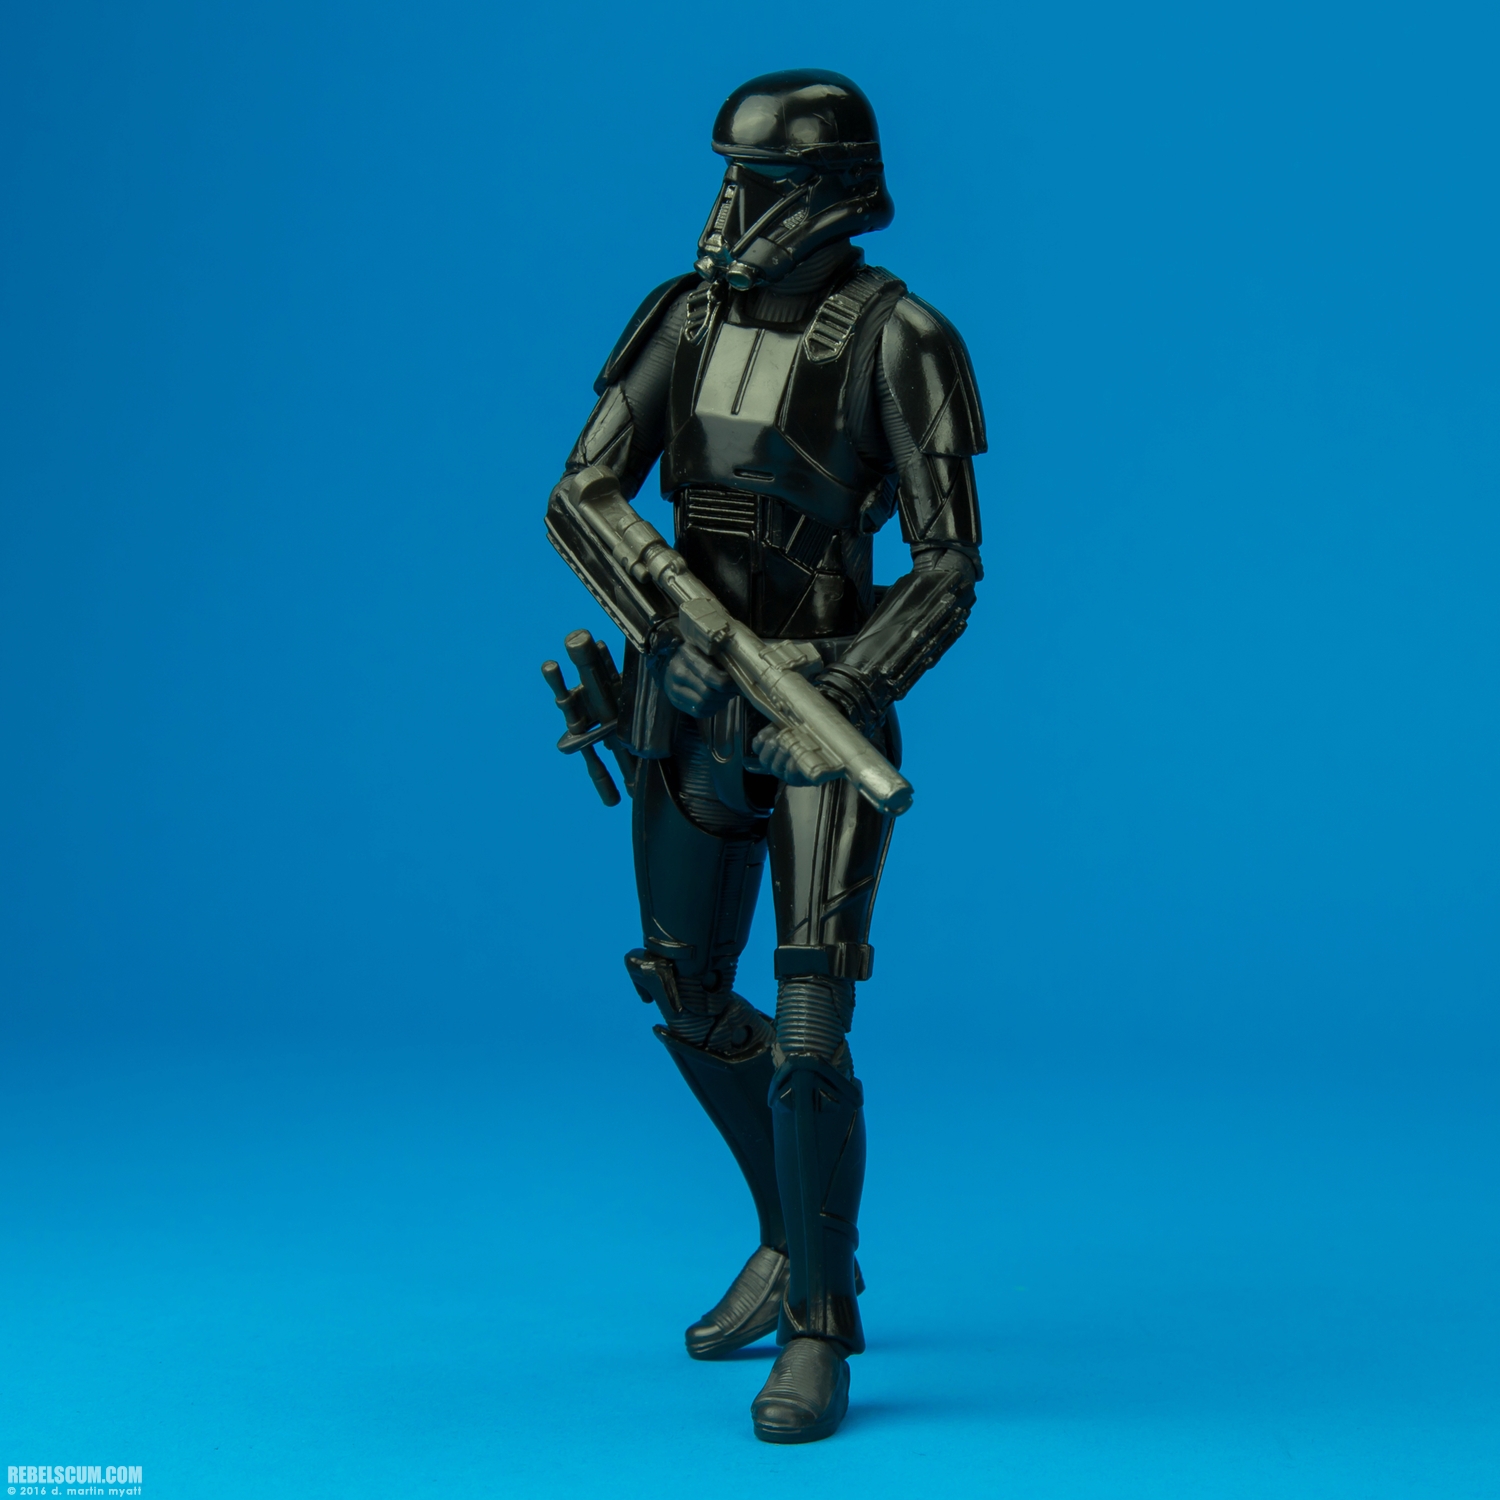 Imperial-Death-Trooper-25-The-Black-Series-6-inch-011.jpg